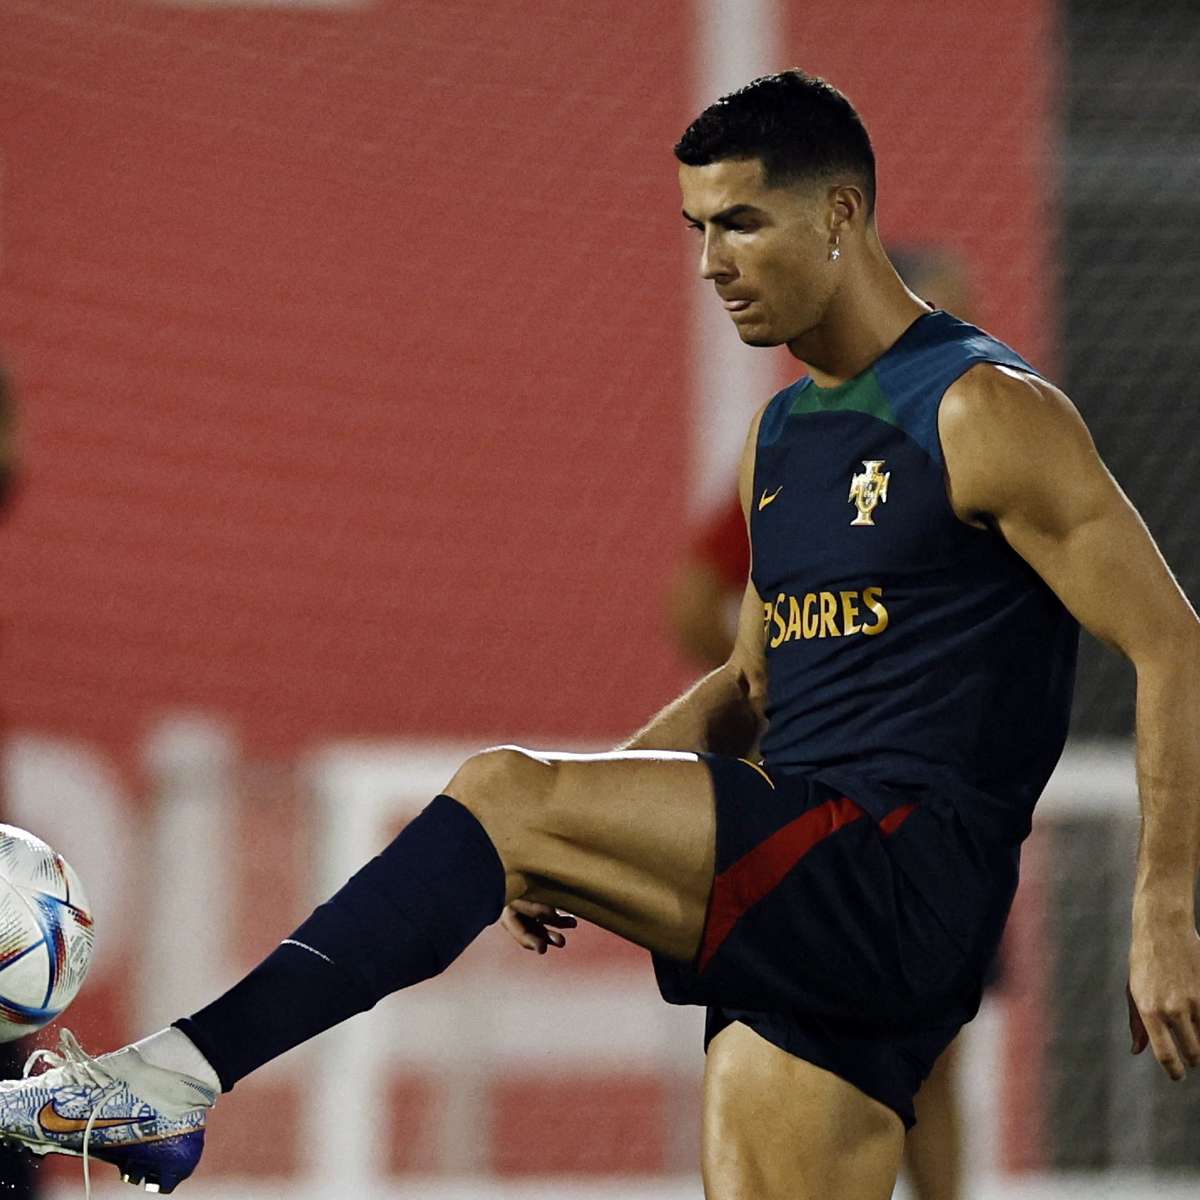 Portugal na era Cristiano Ronaldo: 5 semifinais em 8 torneios